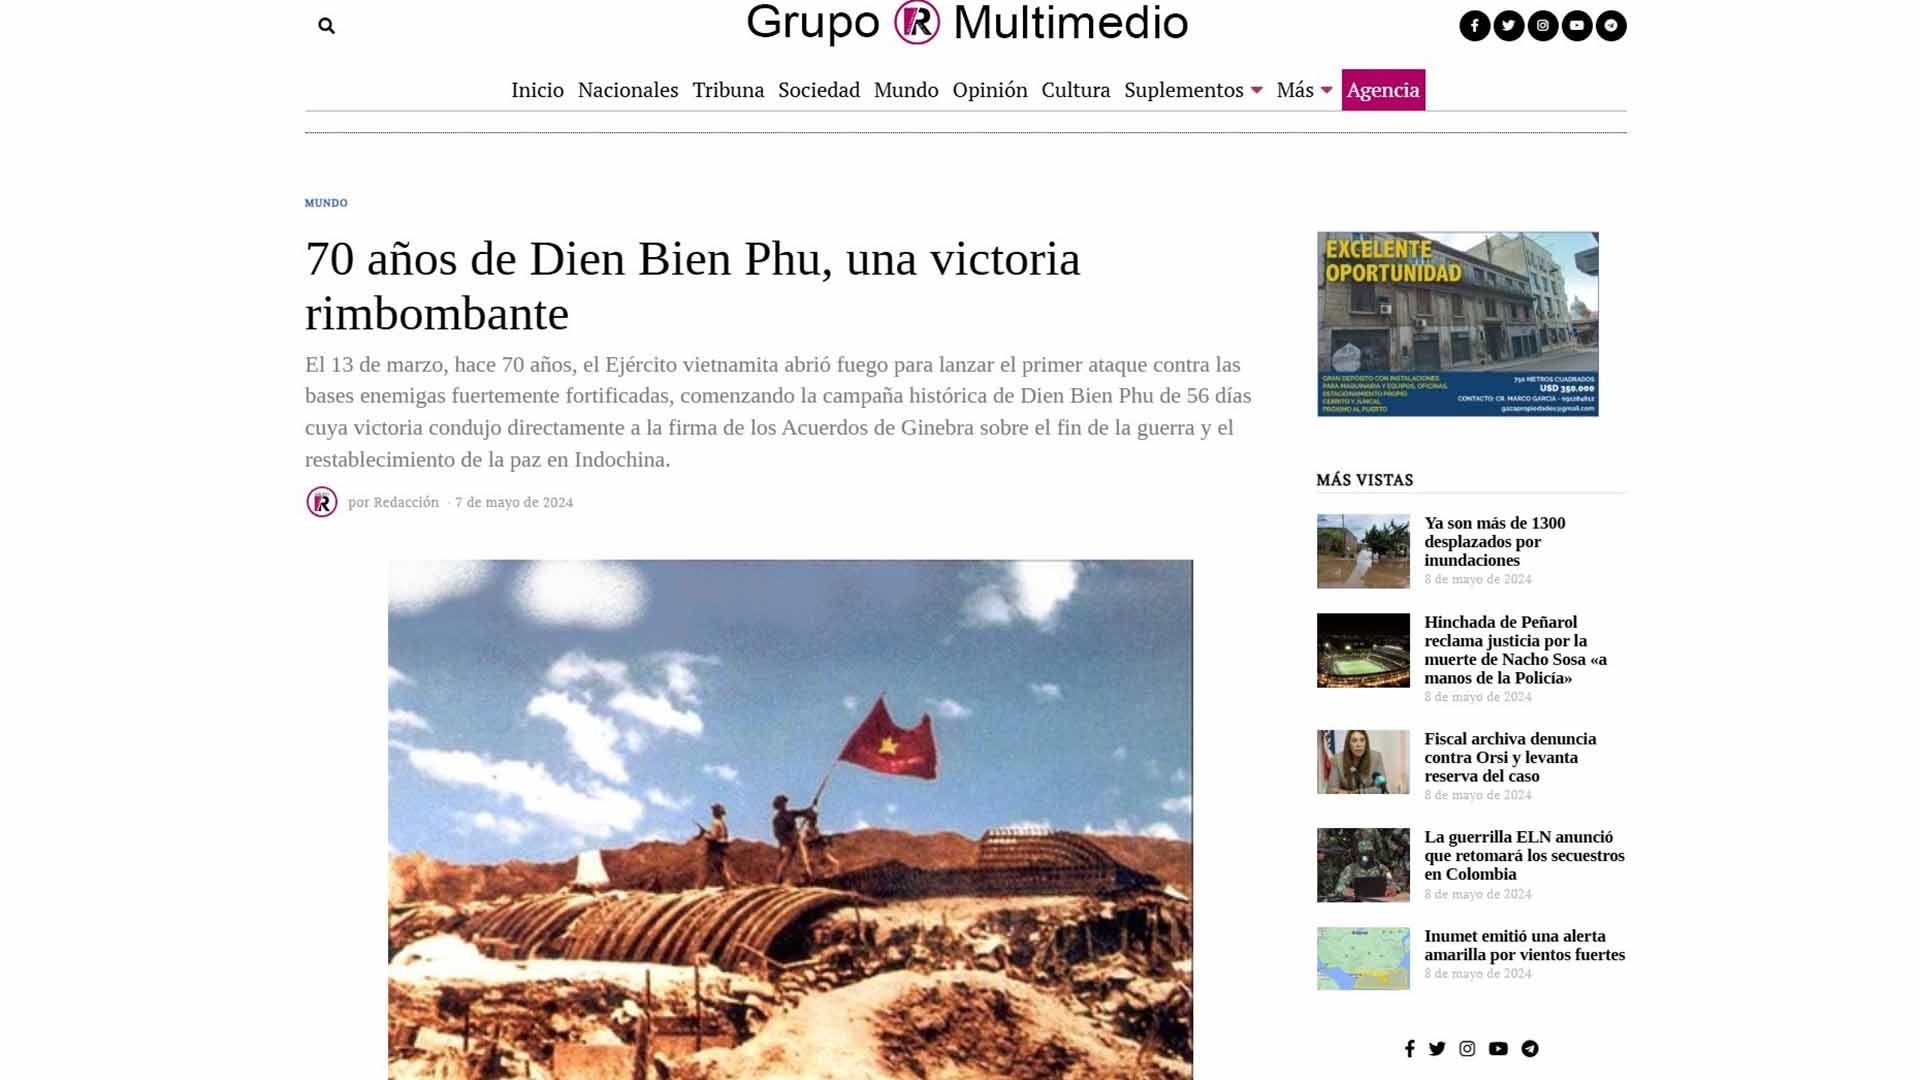 Ảnh chụp màn hình bài báo trên tờ Grupo R Multimedio của Uruguay.